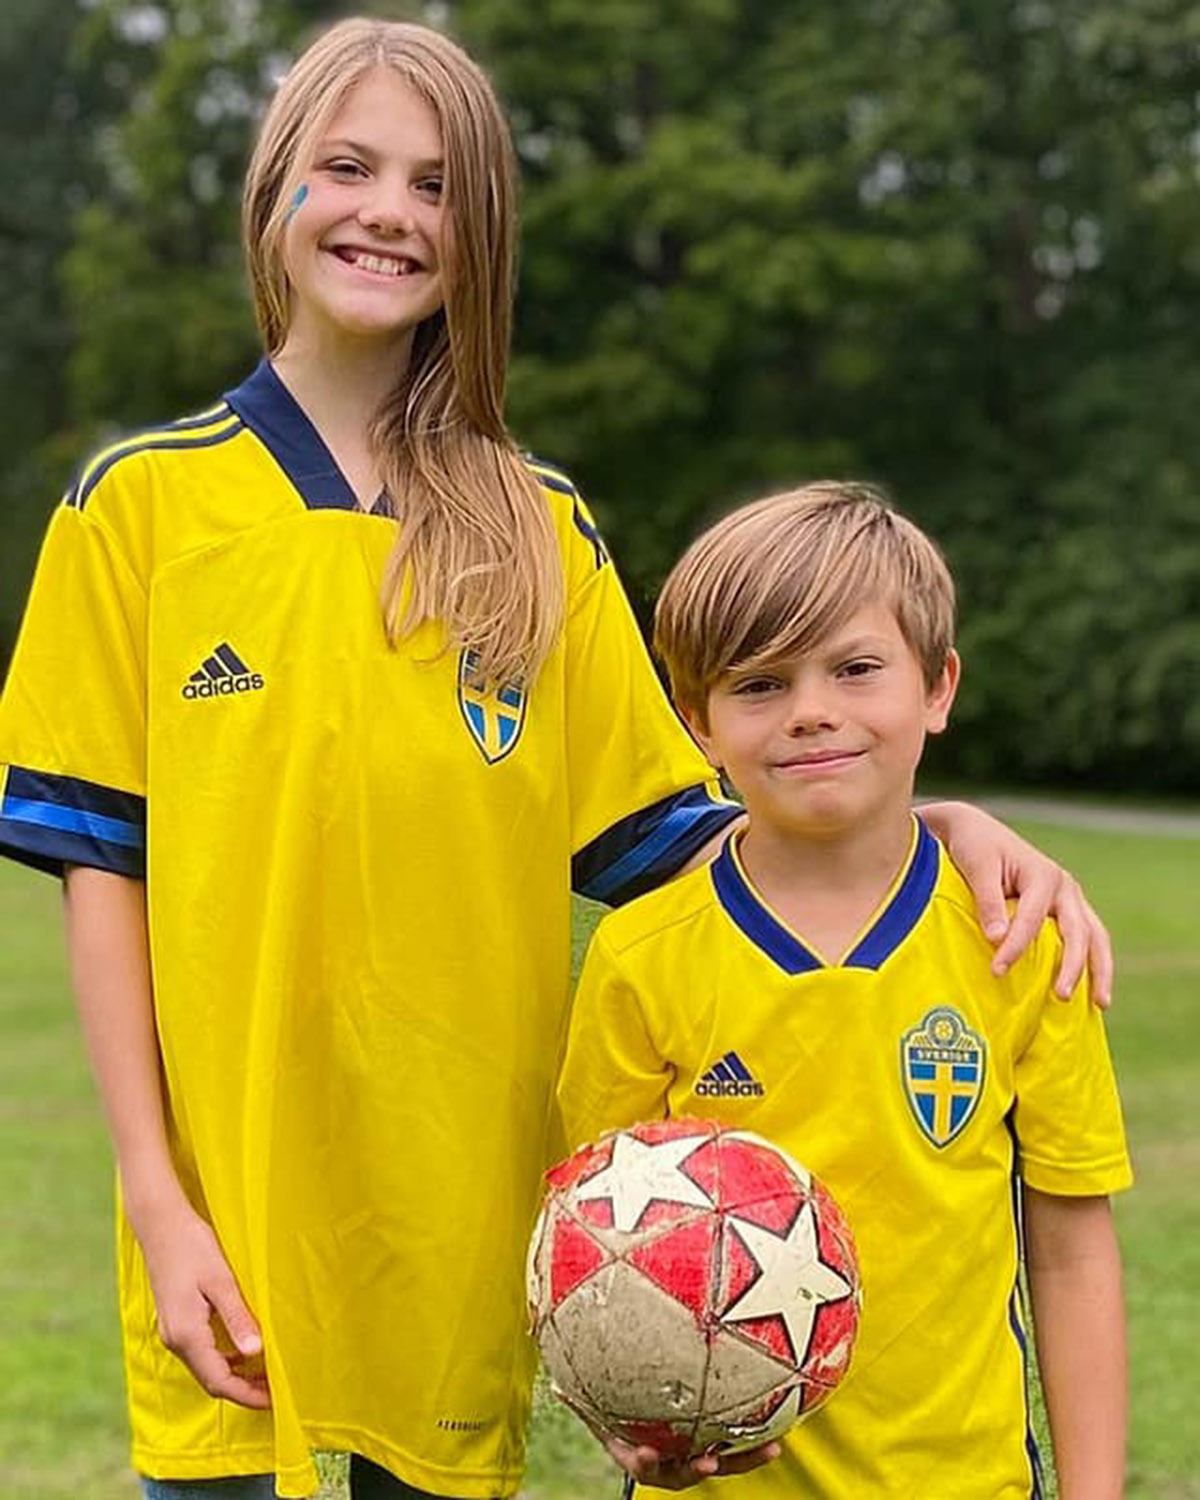 estelle y oscar de suecia vestidos con el uniforme de la selección sueca de futbol